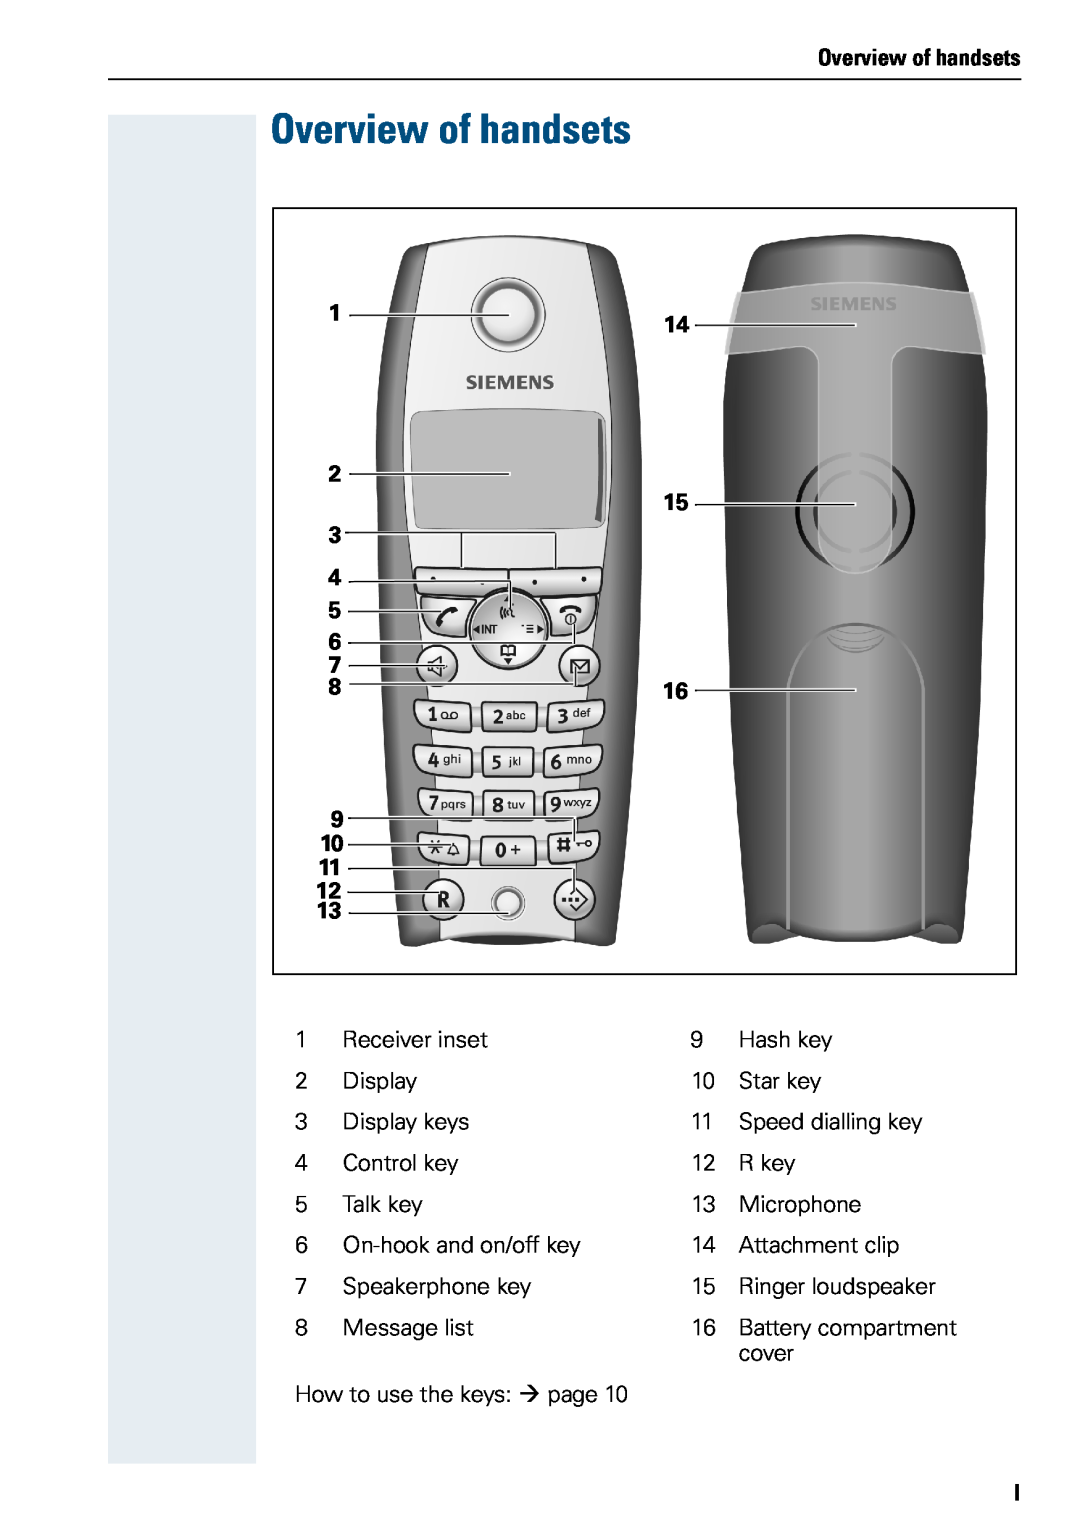 Siemens 3000 V3.0 manual Overview of handsets 